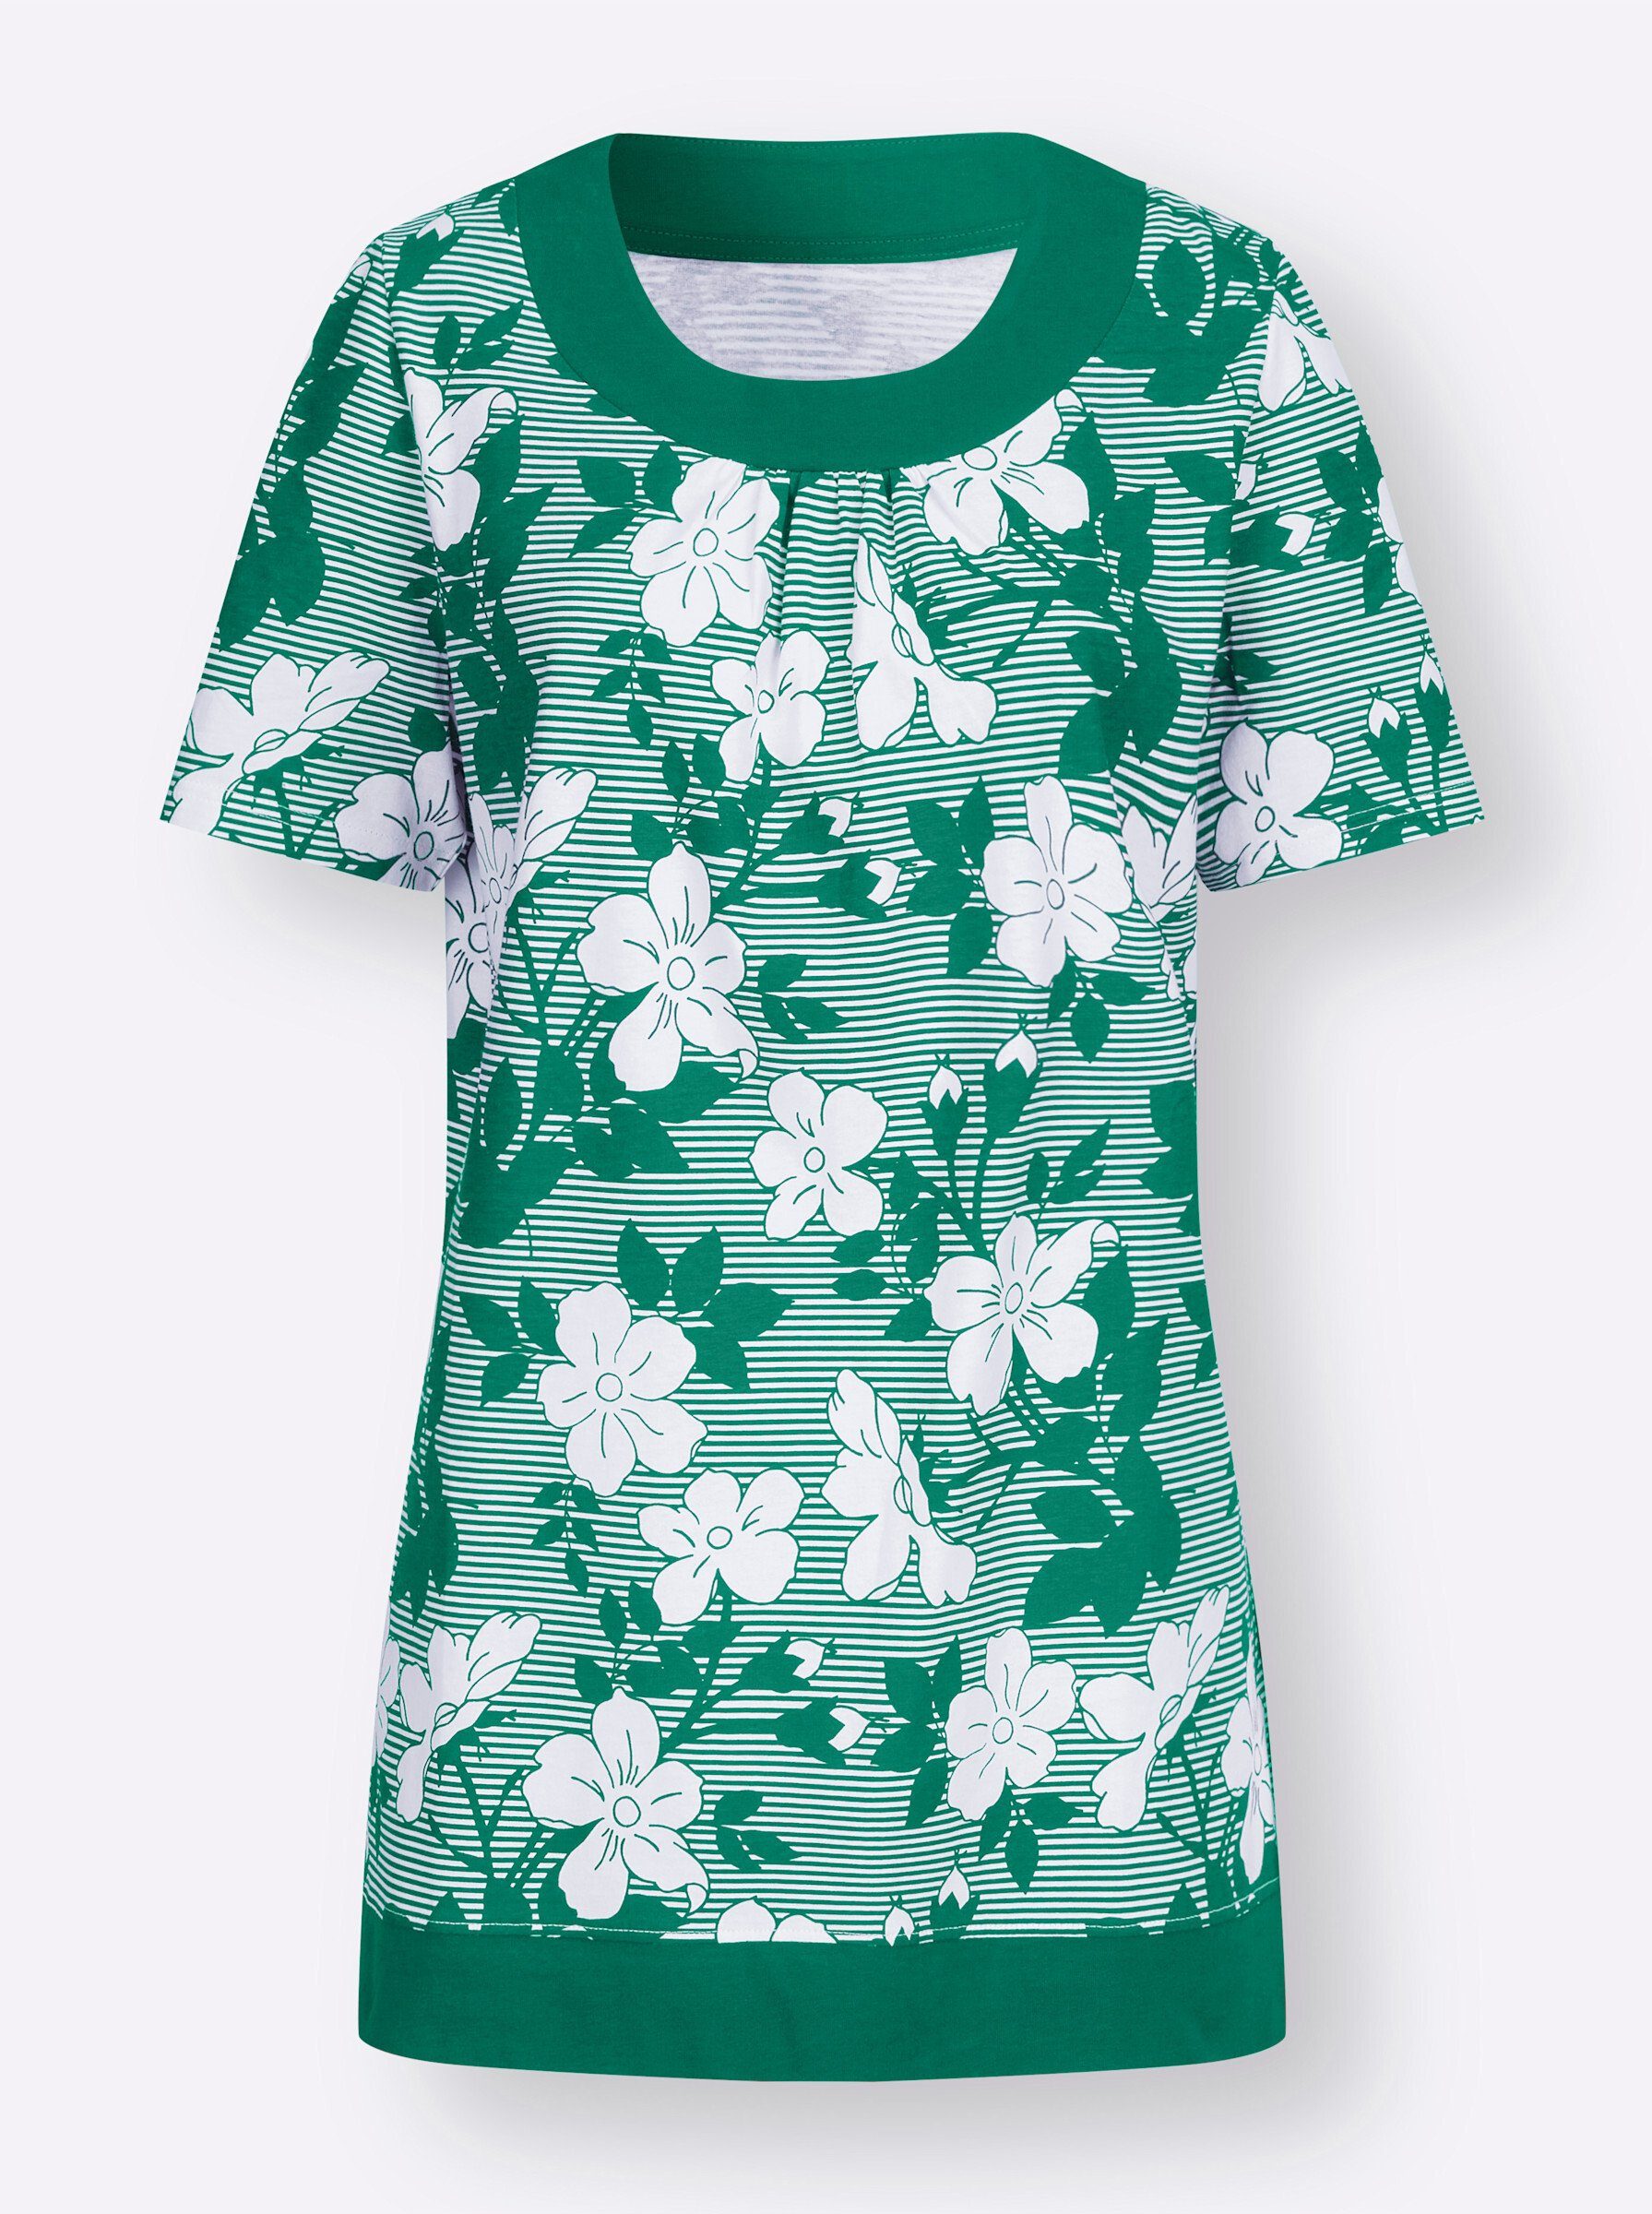 an! Sieh grün-weiß-bedruckt T-Shirt